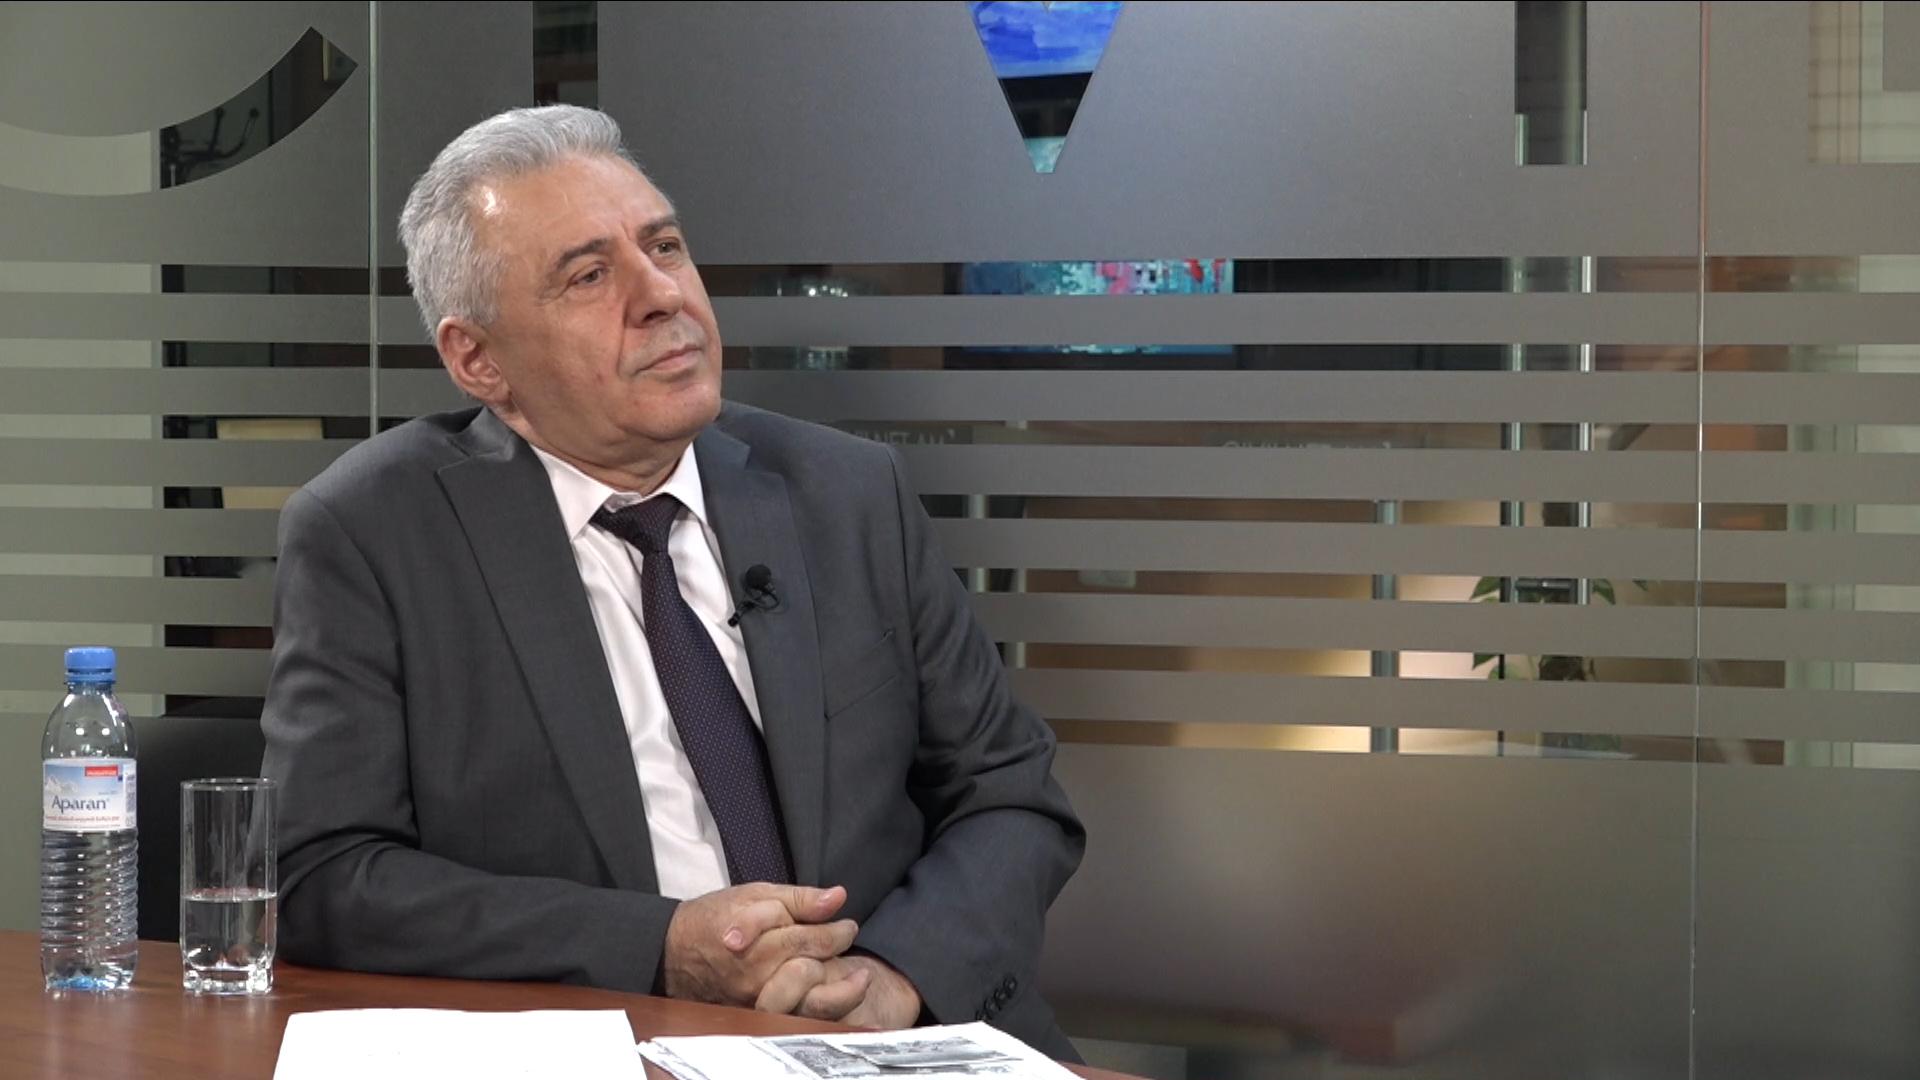 Турция дестабилизирует Карабах: главный советник премьер-министра Армении